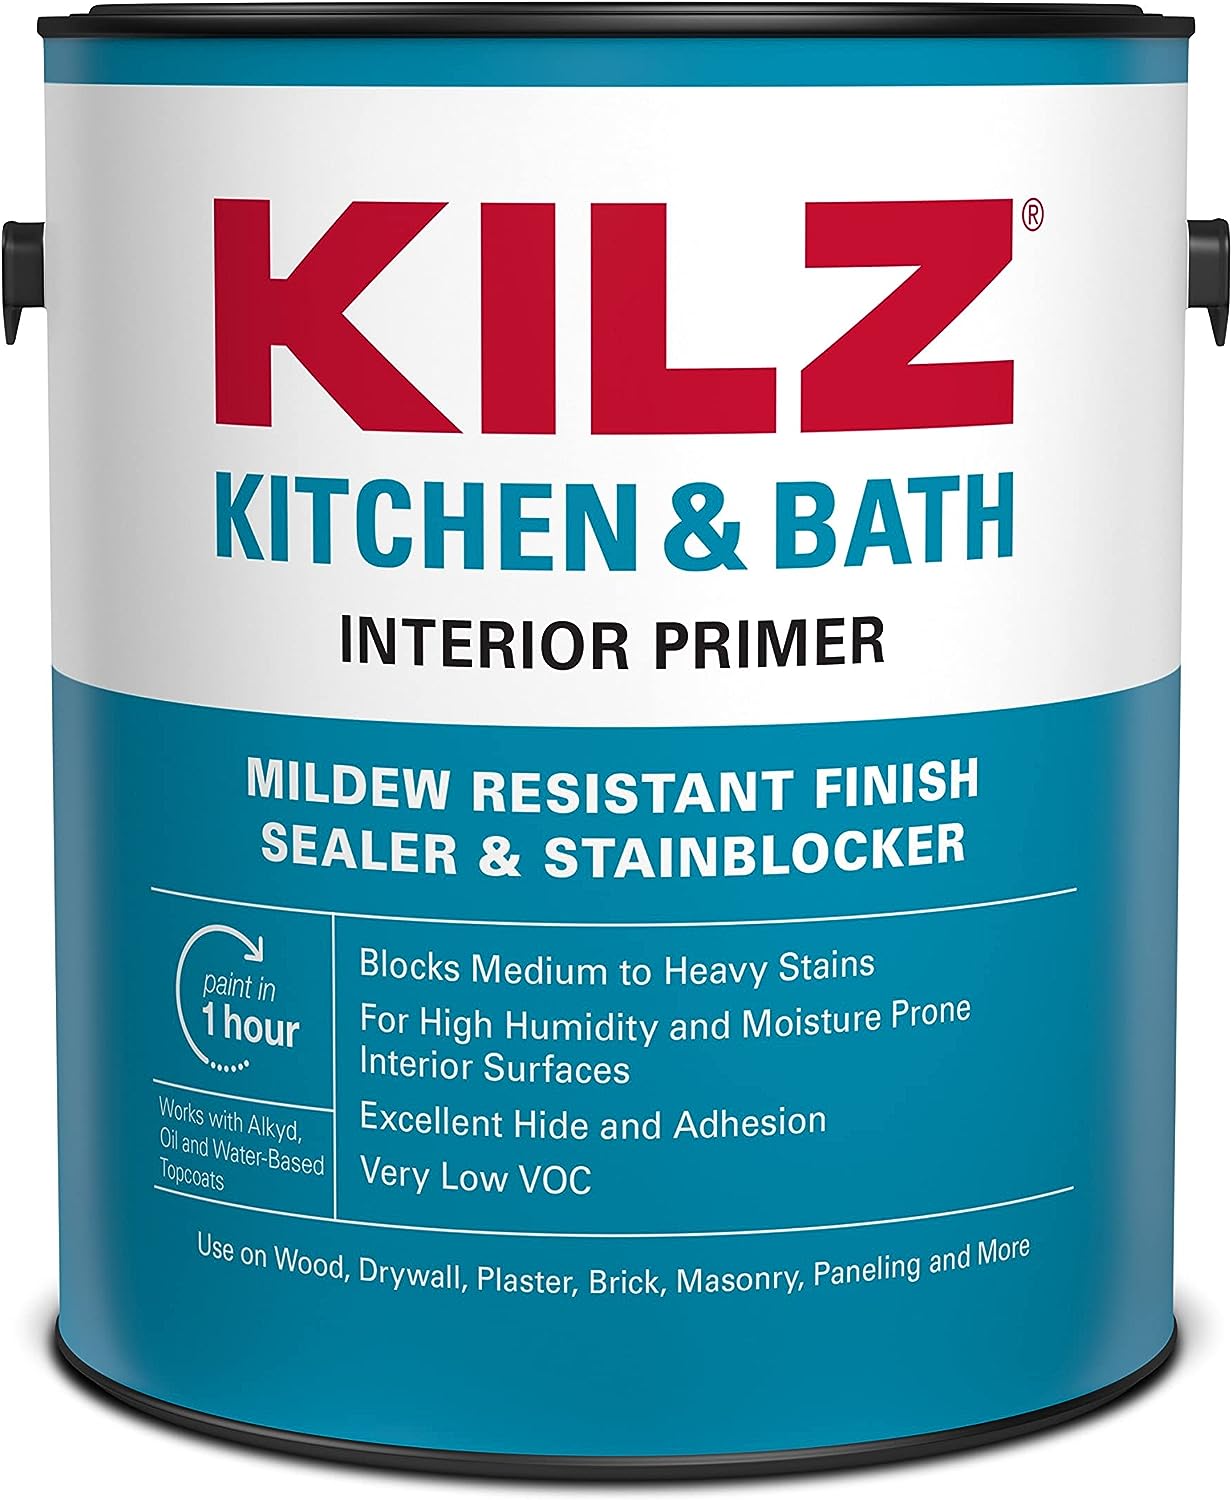 KILZ Kitchen & Bath Primer, Interior, 1 Gallon